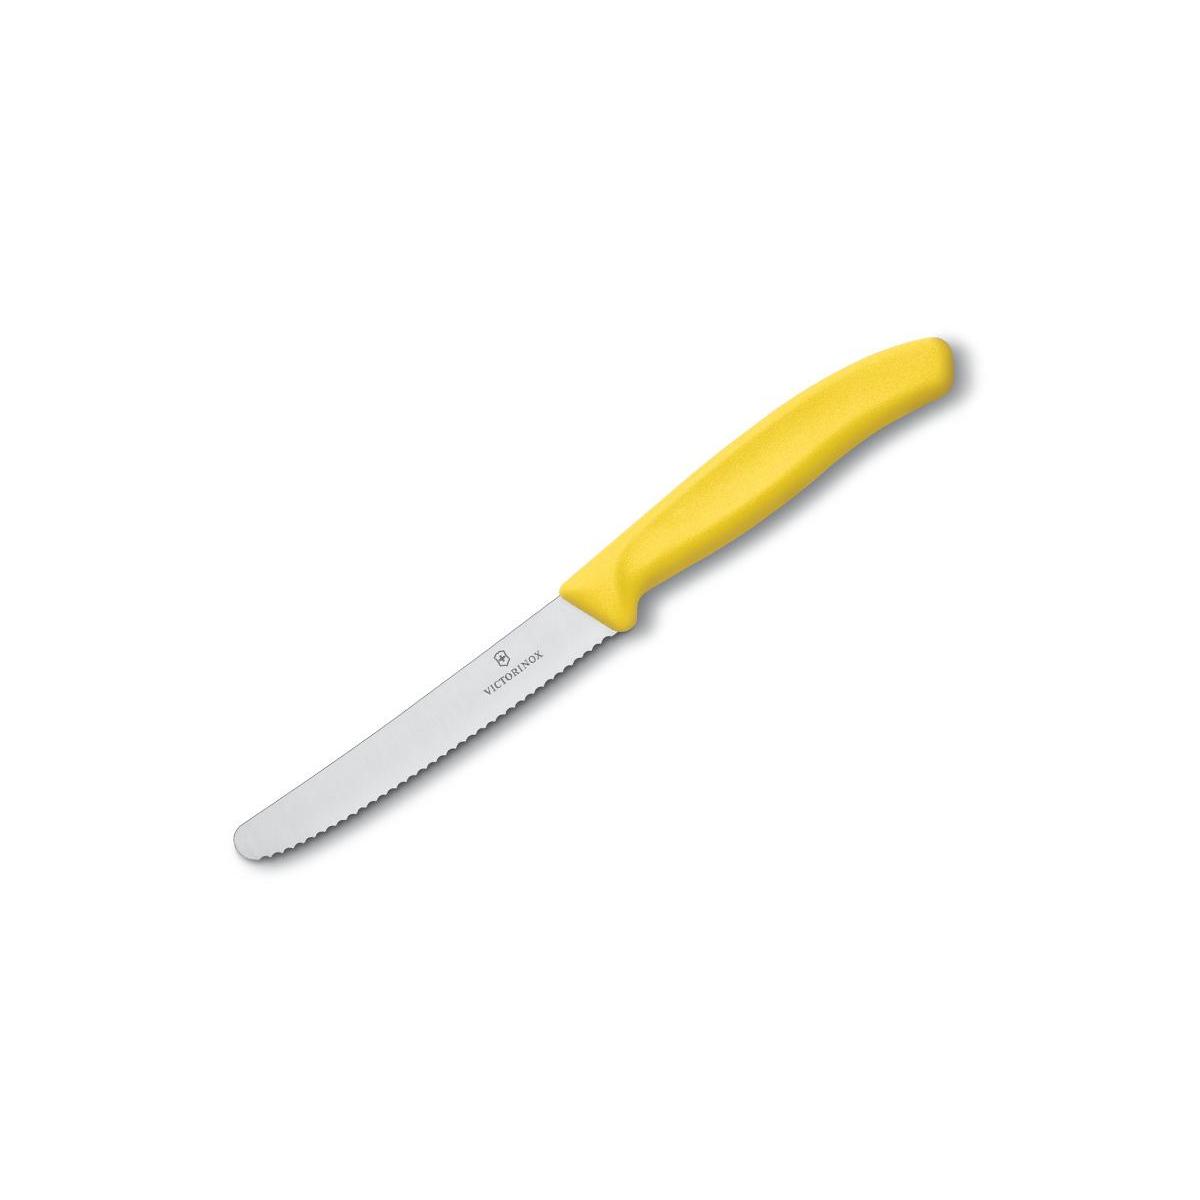 Victorinox nóż uniwersalny 11cm ząbkowany żółty.